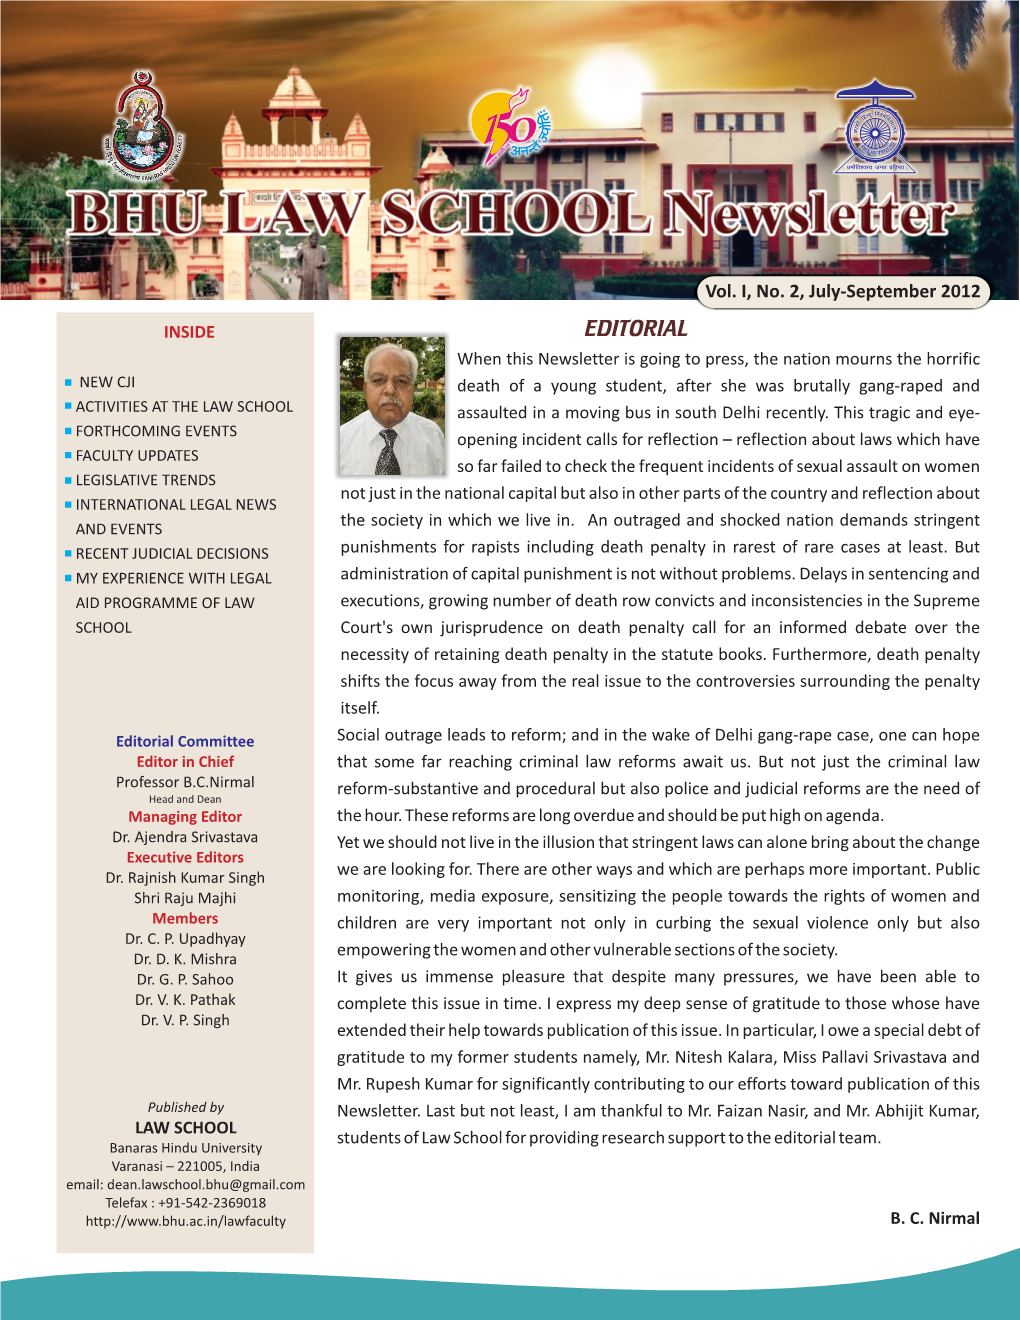 News Letter Vol. I, No. 2, July-September 2012